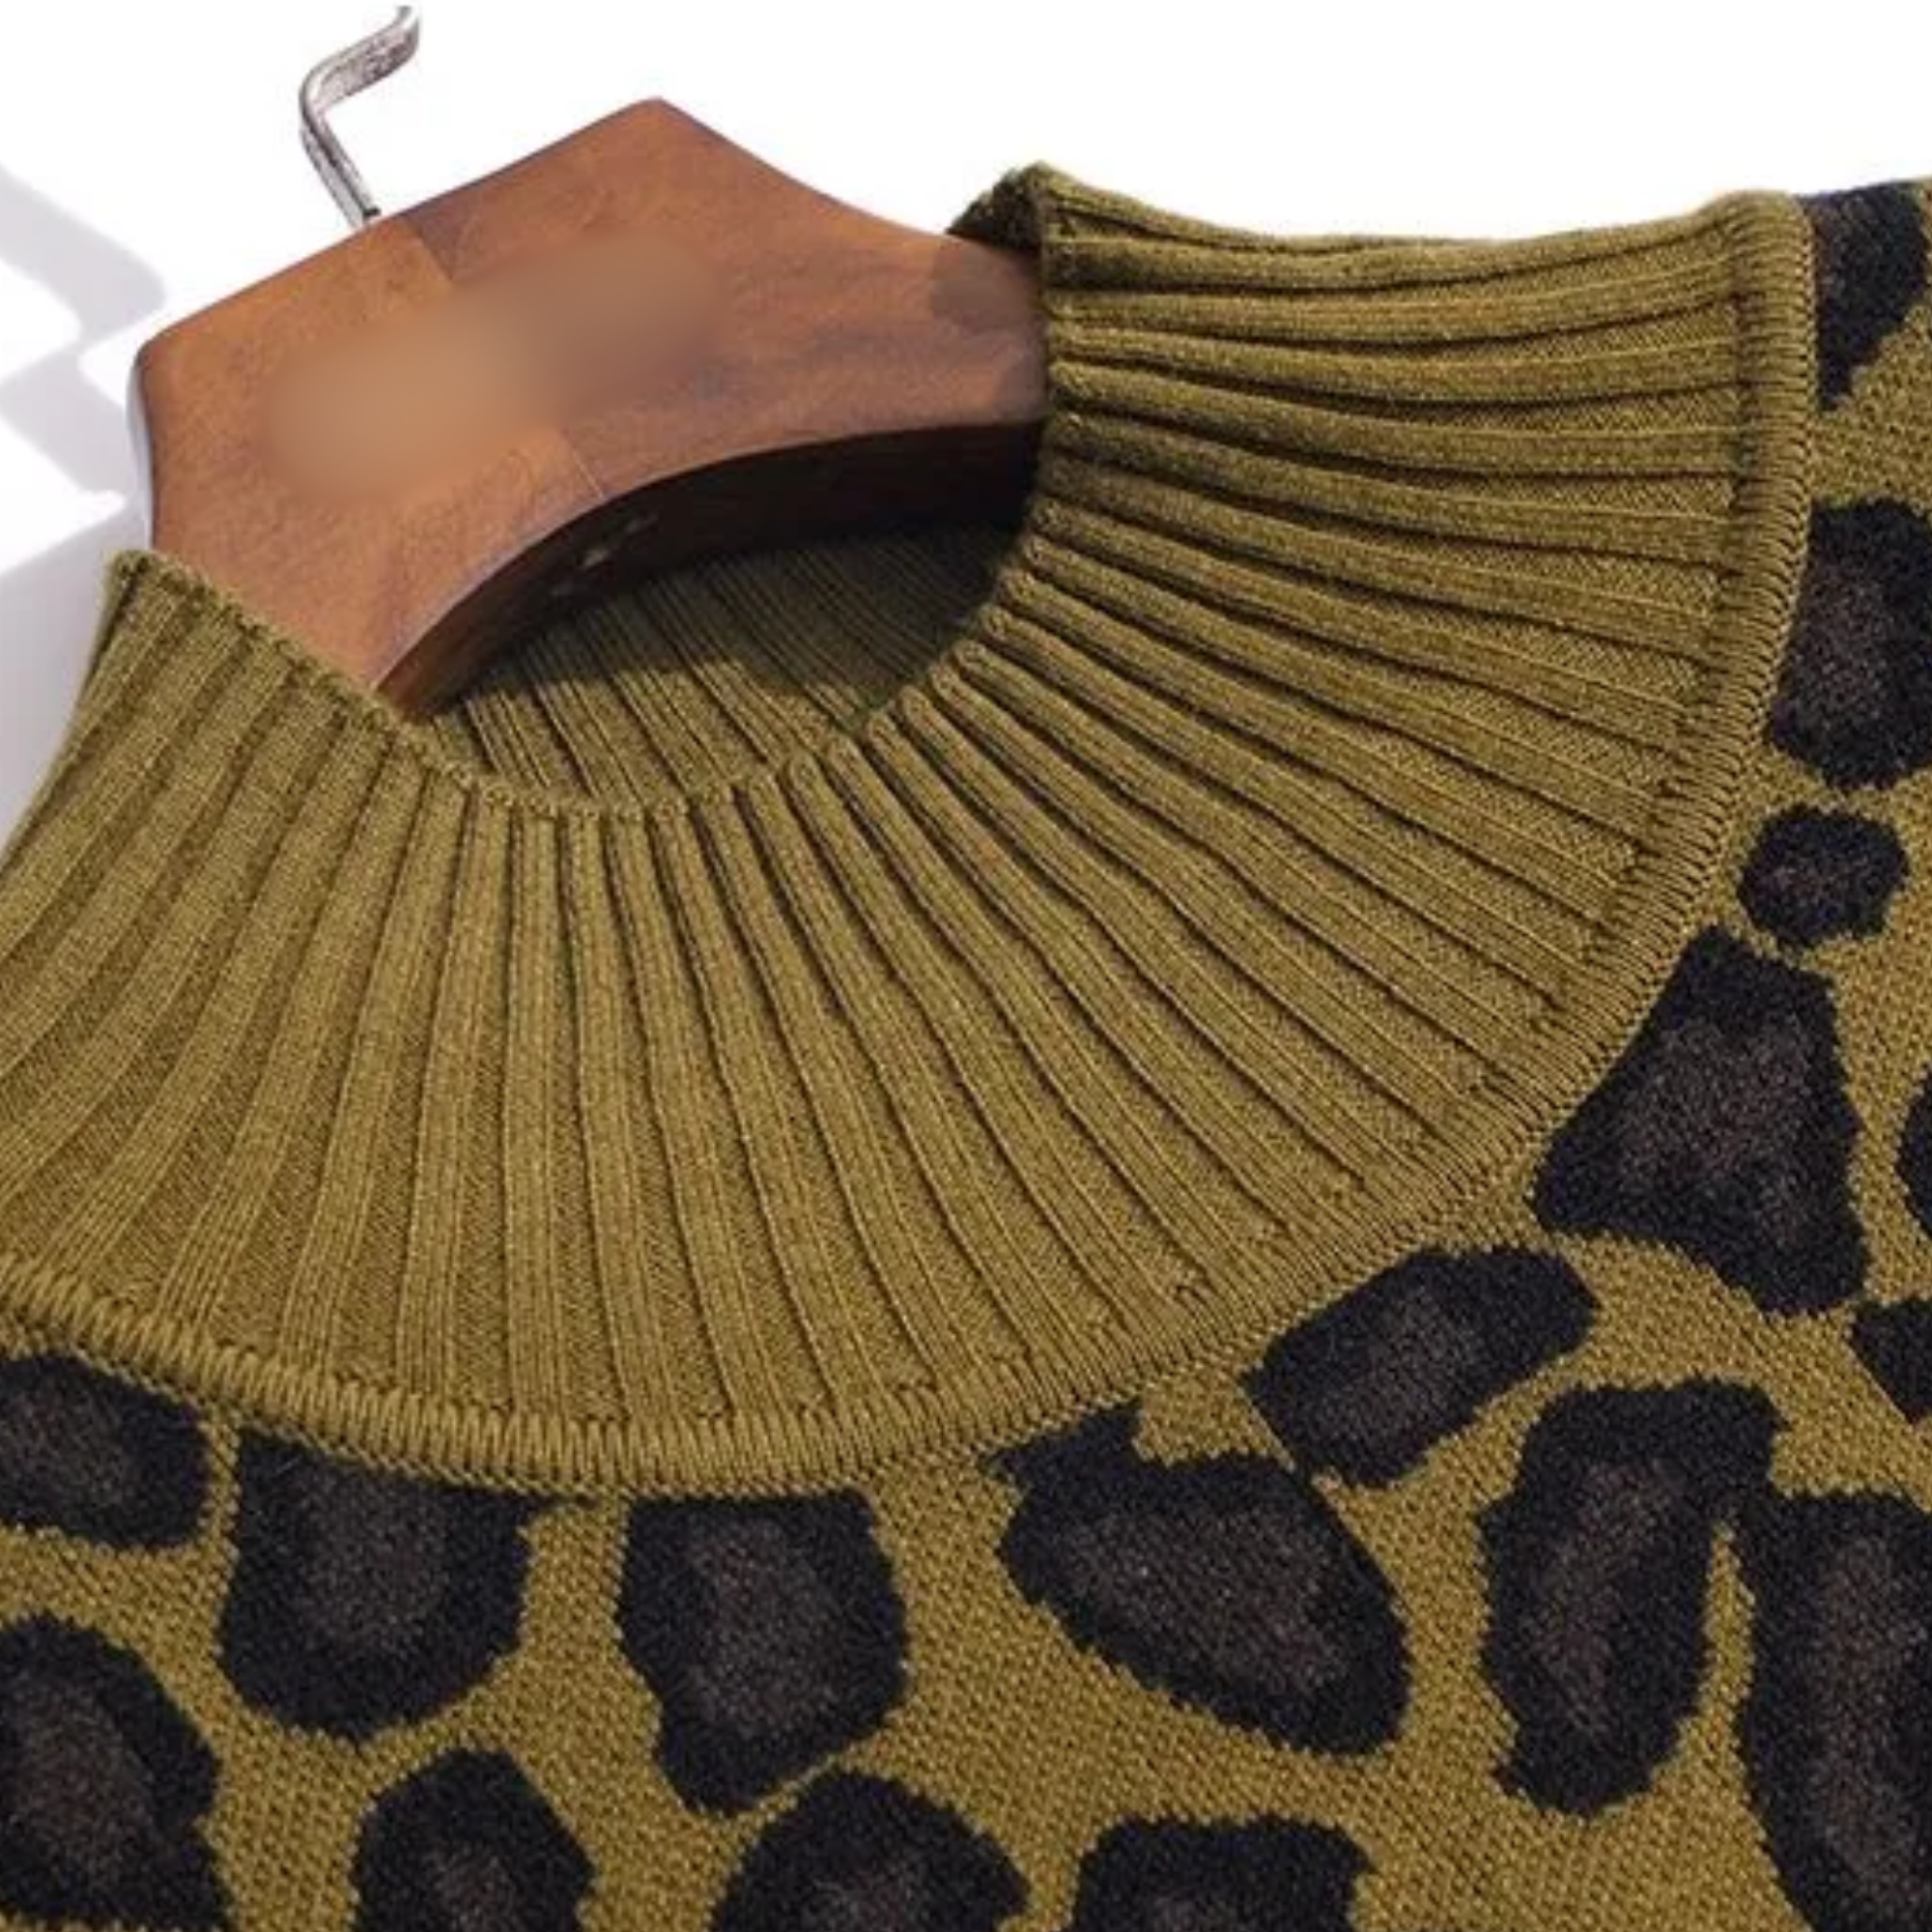 Leopard Sweater Dress on Sale, Kelly in the City